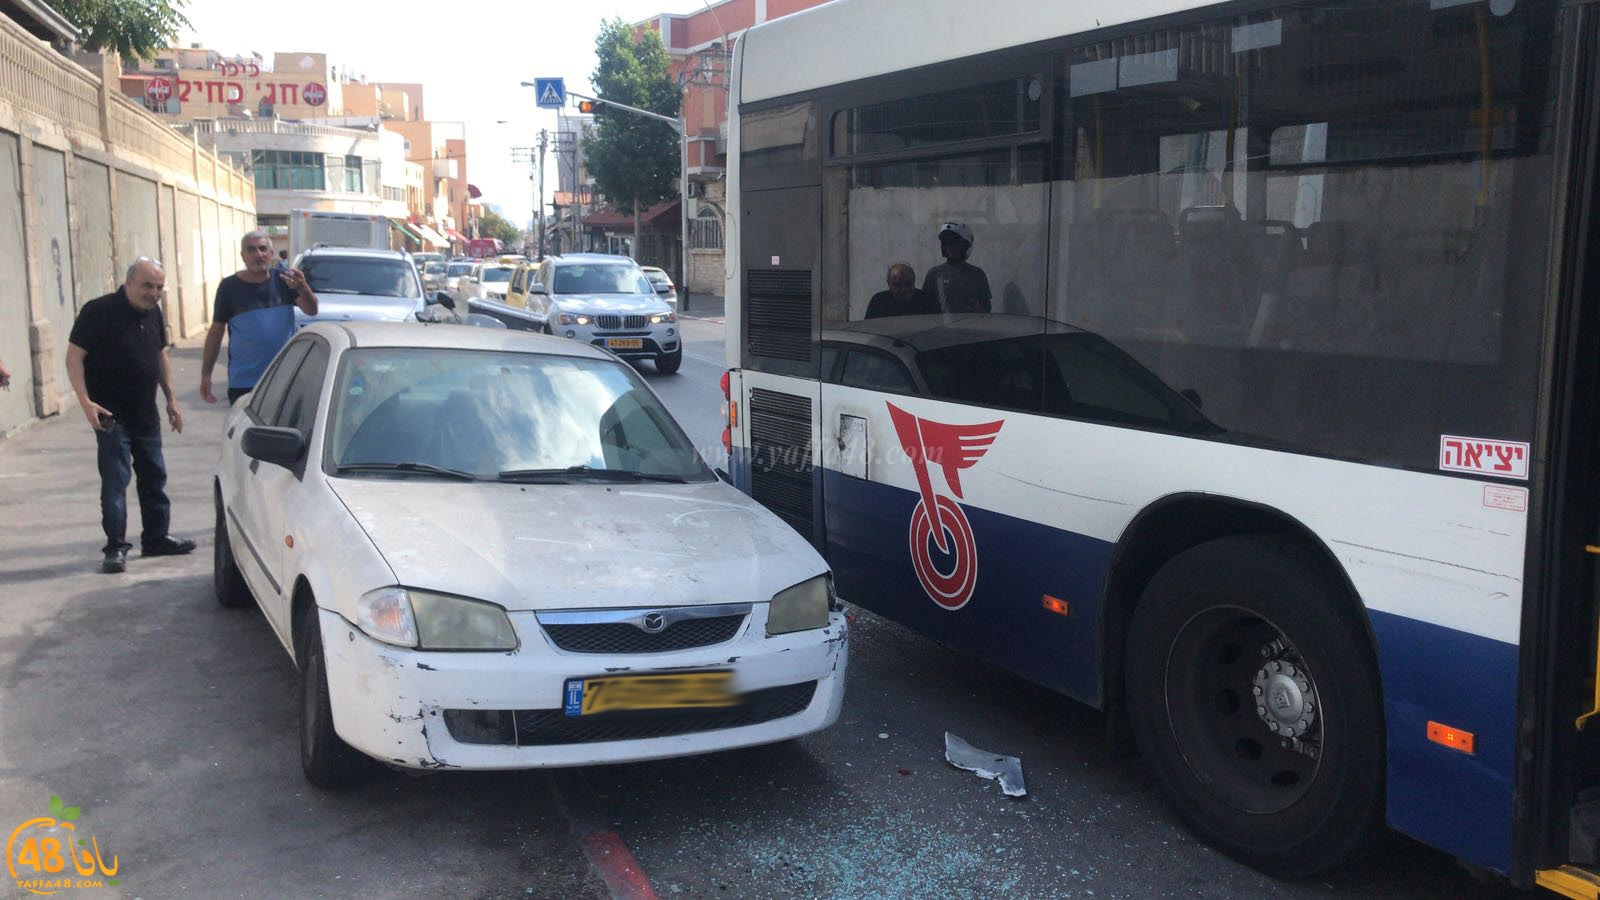 فيديو: حافلة تتسبب بحادث طرق متسلسل في مدينة يافا دون وقوع اصابات 